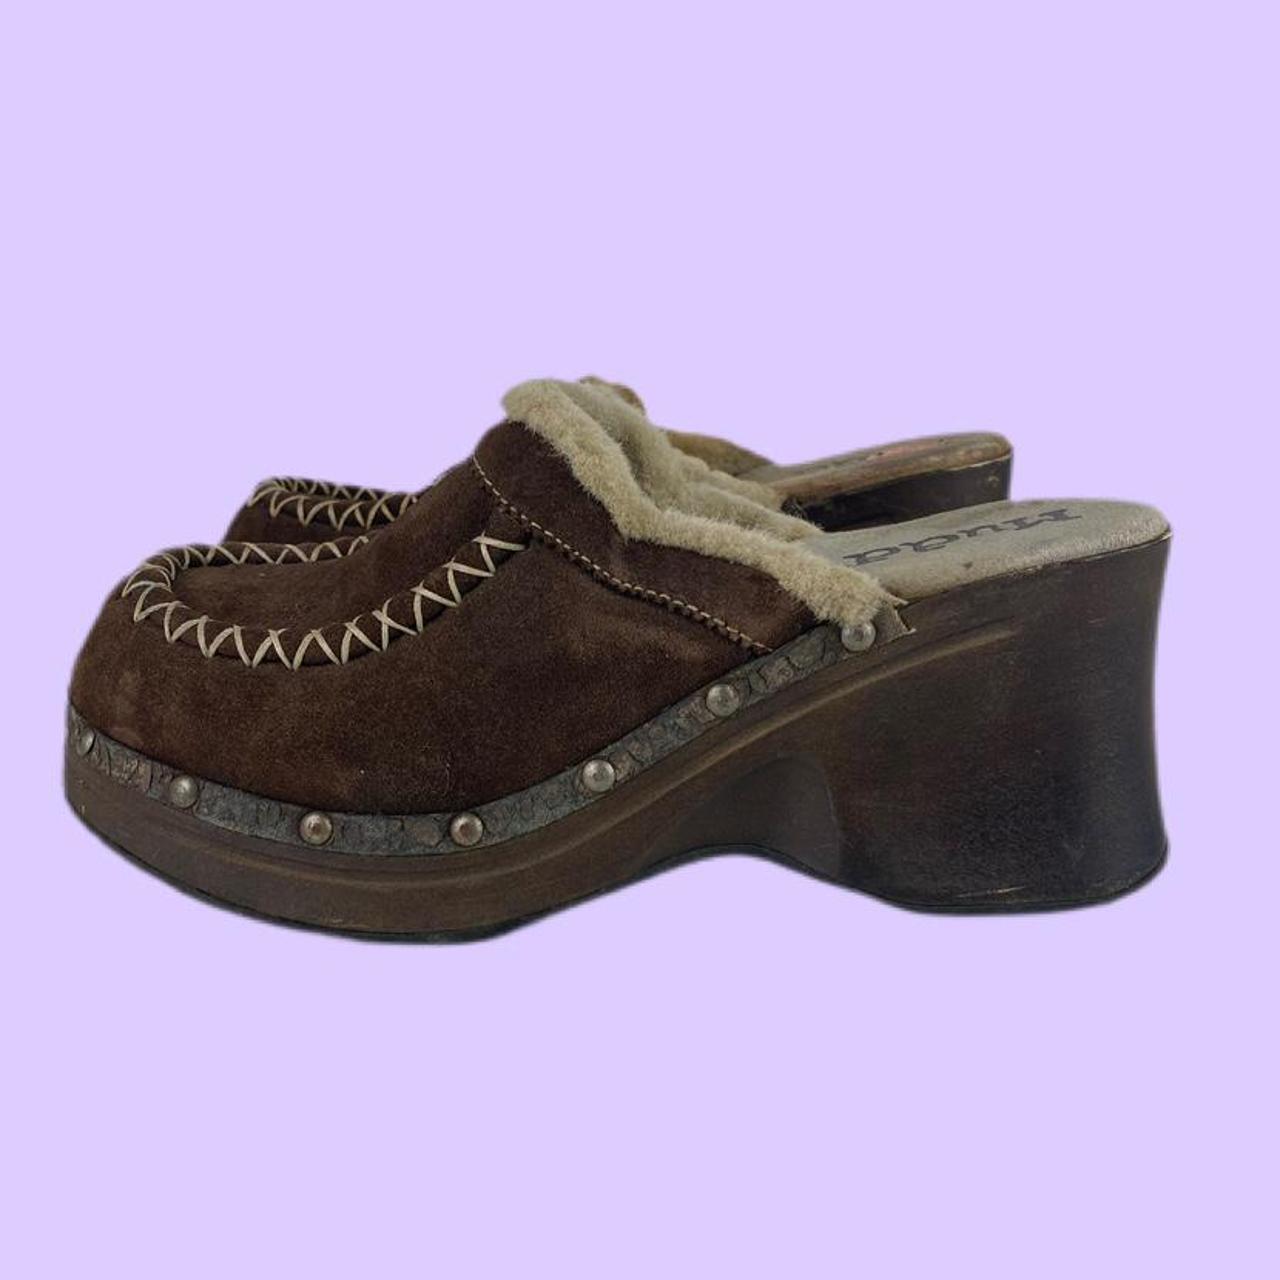 Vintage Mudd platform suede brown clogs So cute and... - Depop